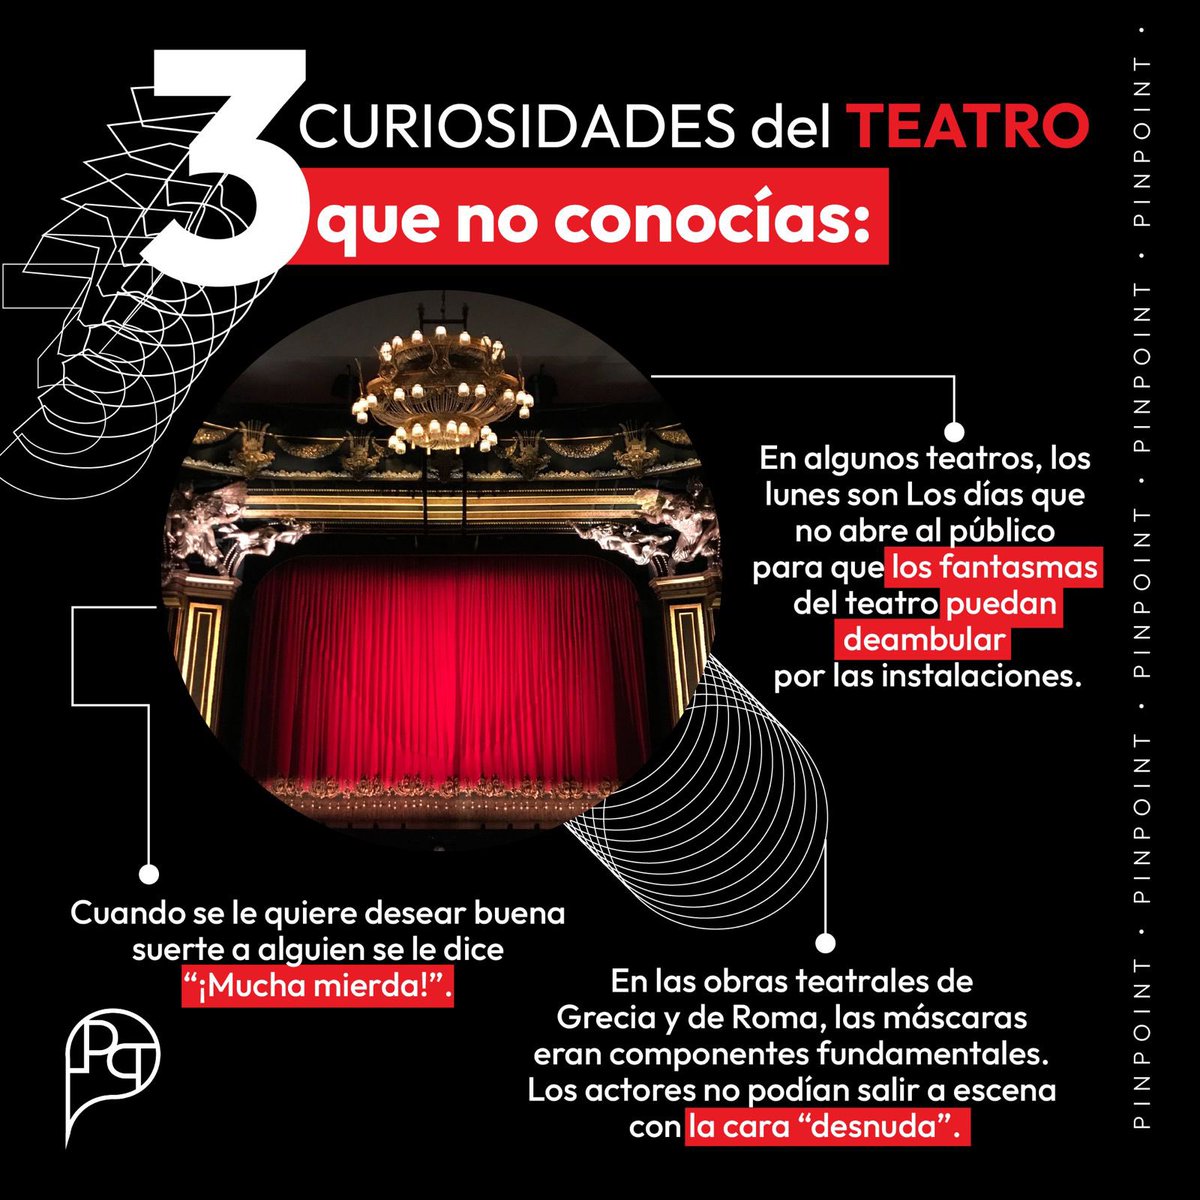 ¡Descubre 3 curiosidades fascinantes del teatro que probablemente no conocías! 🎭 #teatro